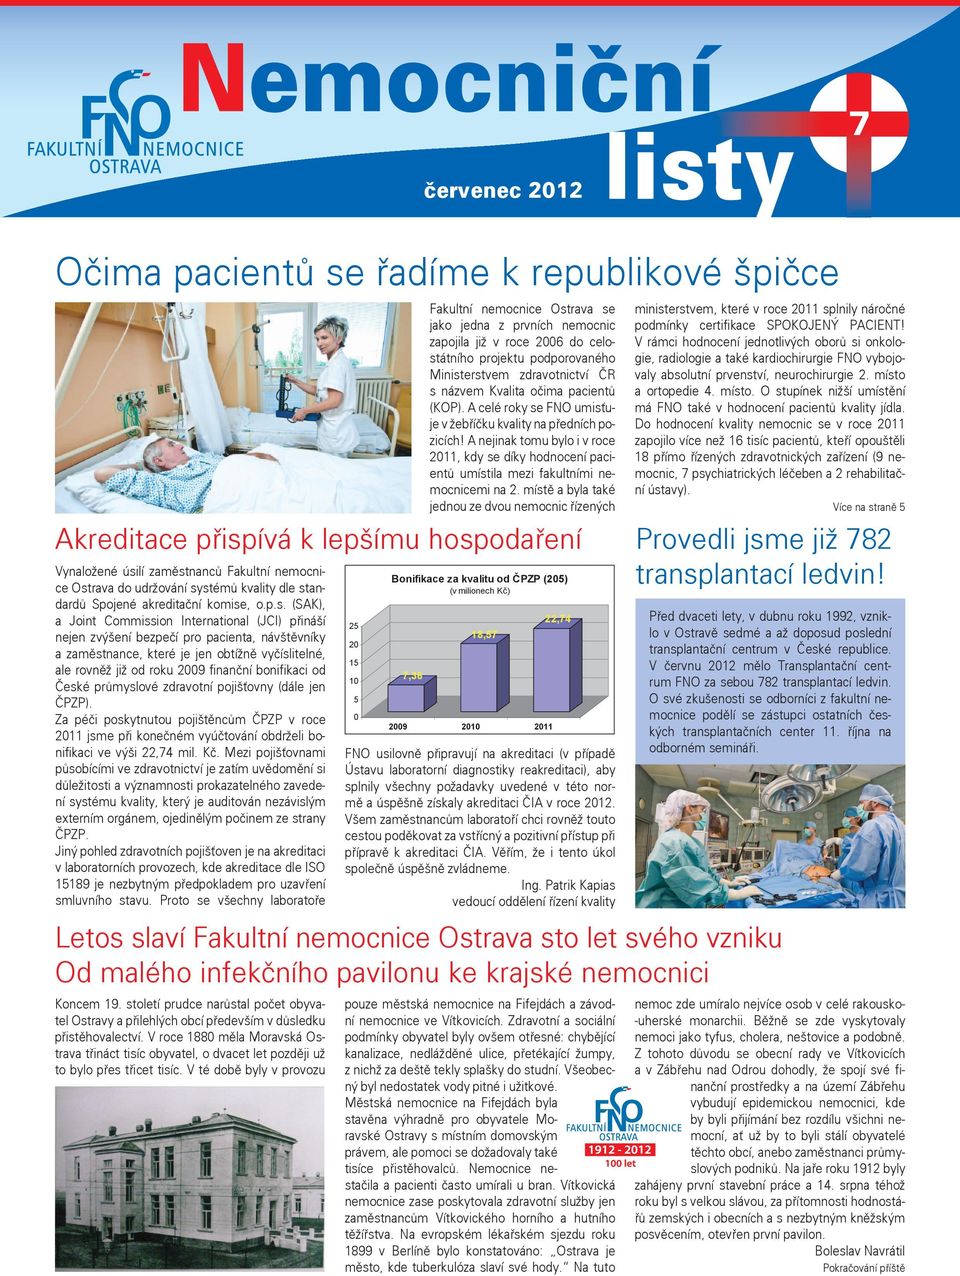 V té době byly v provozu Fakultní nemocnice Ostrava se jako jedna z prvních nemocnic zapojila již v roce 2006 do celostátního projektu podporovaného Ministerstvem zdravotnictví ČR s názvem Kvalita